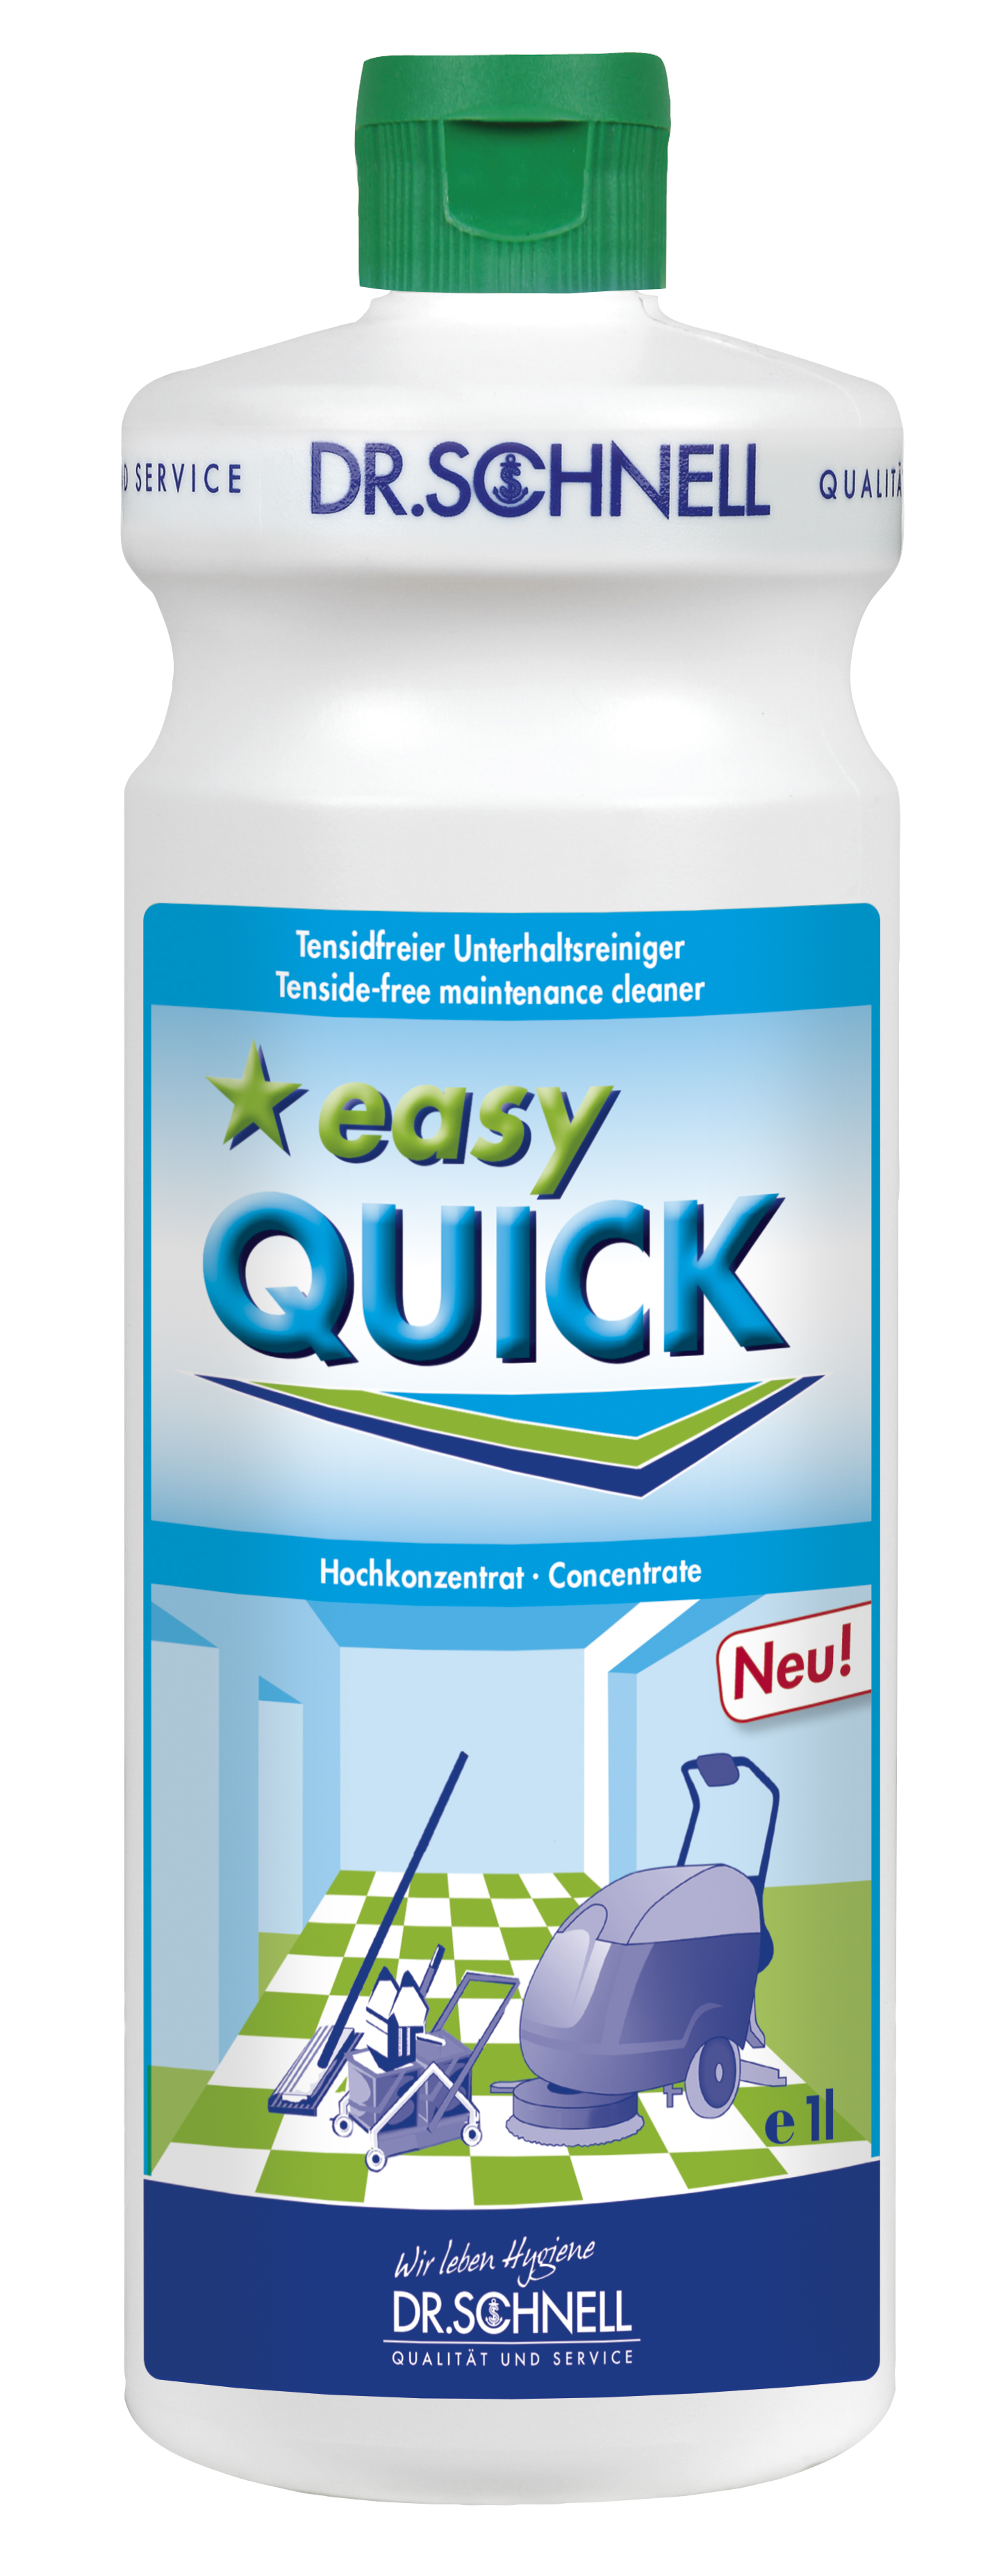 Easy Quick Konzentrat tensidfreier Reiniger,für alle wasserfesten Oberflächen 1l